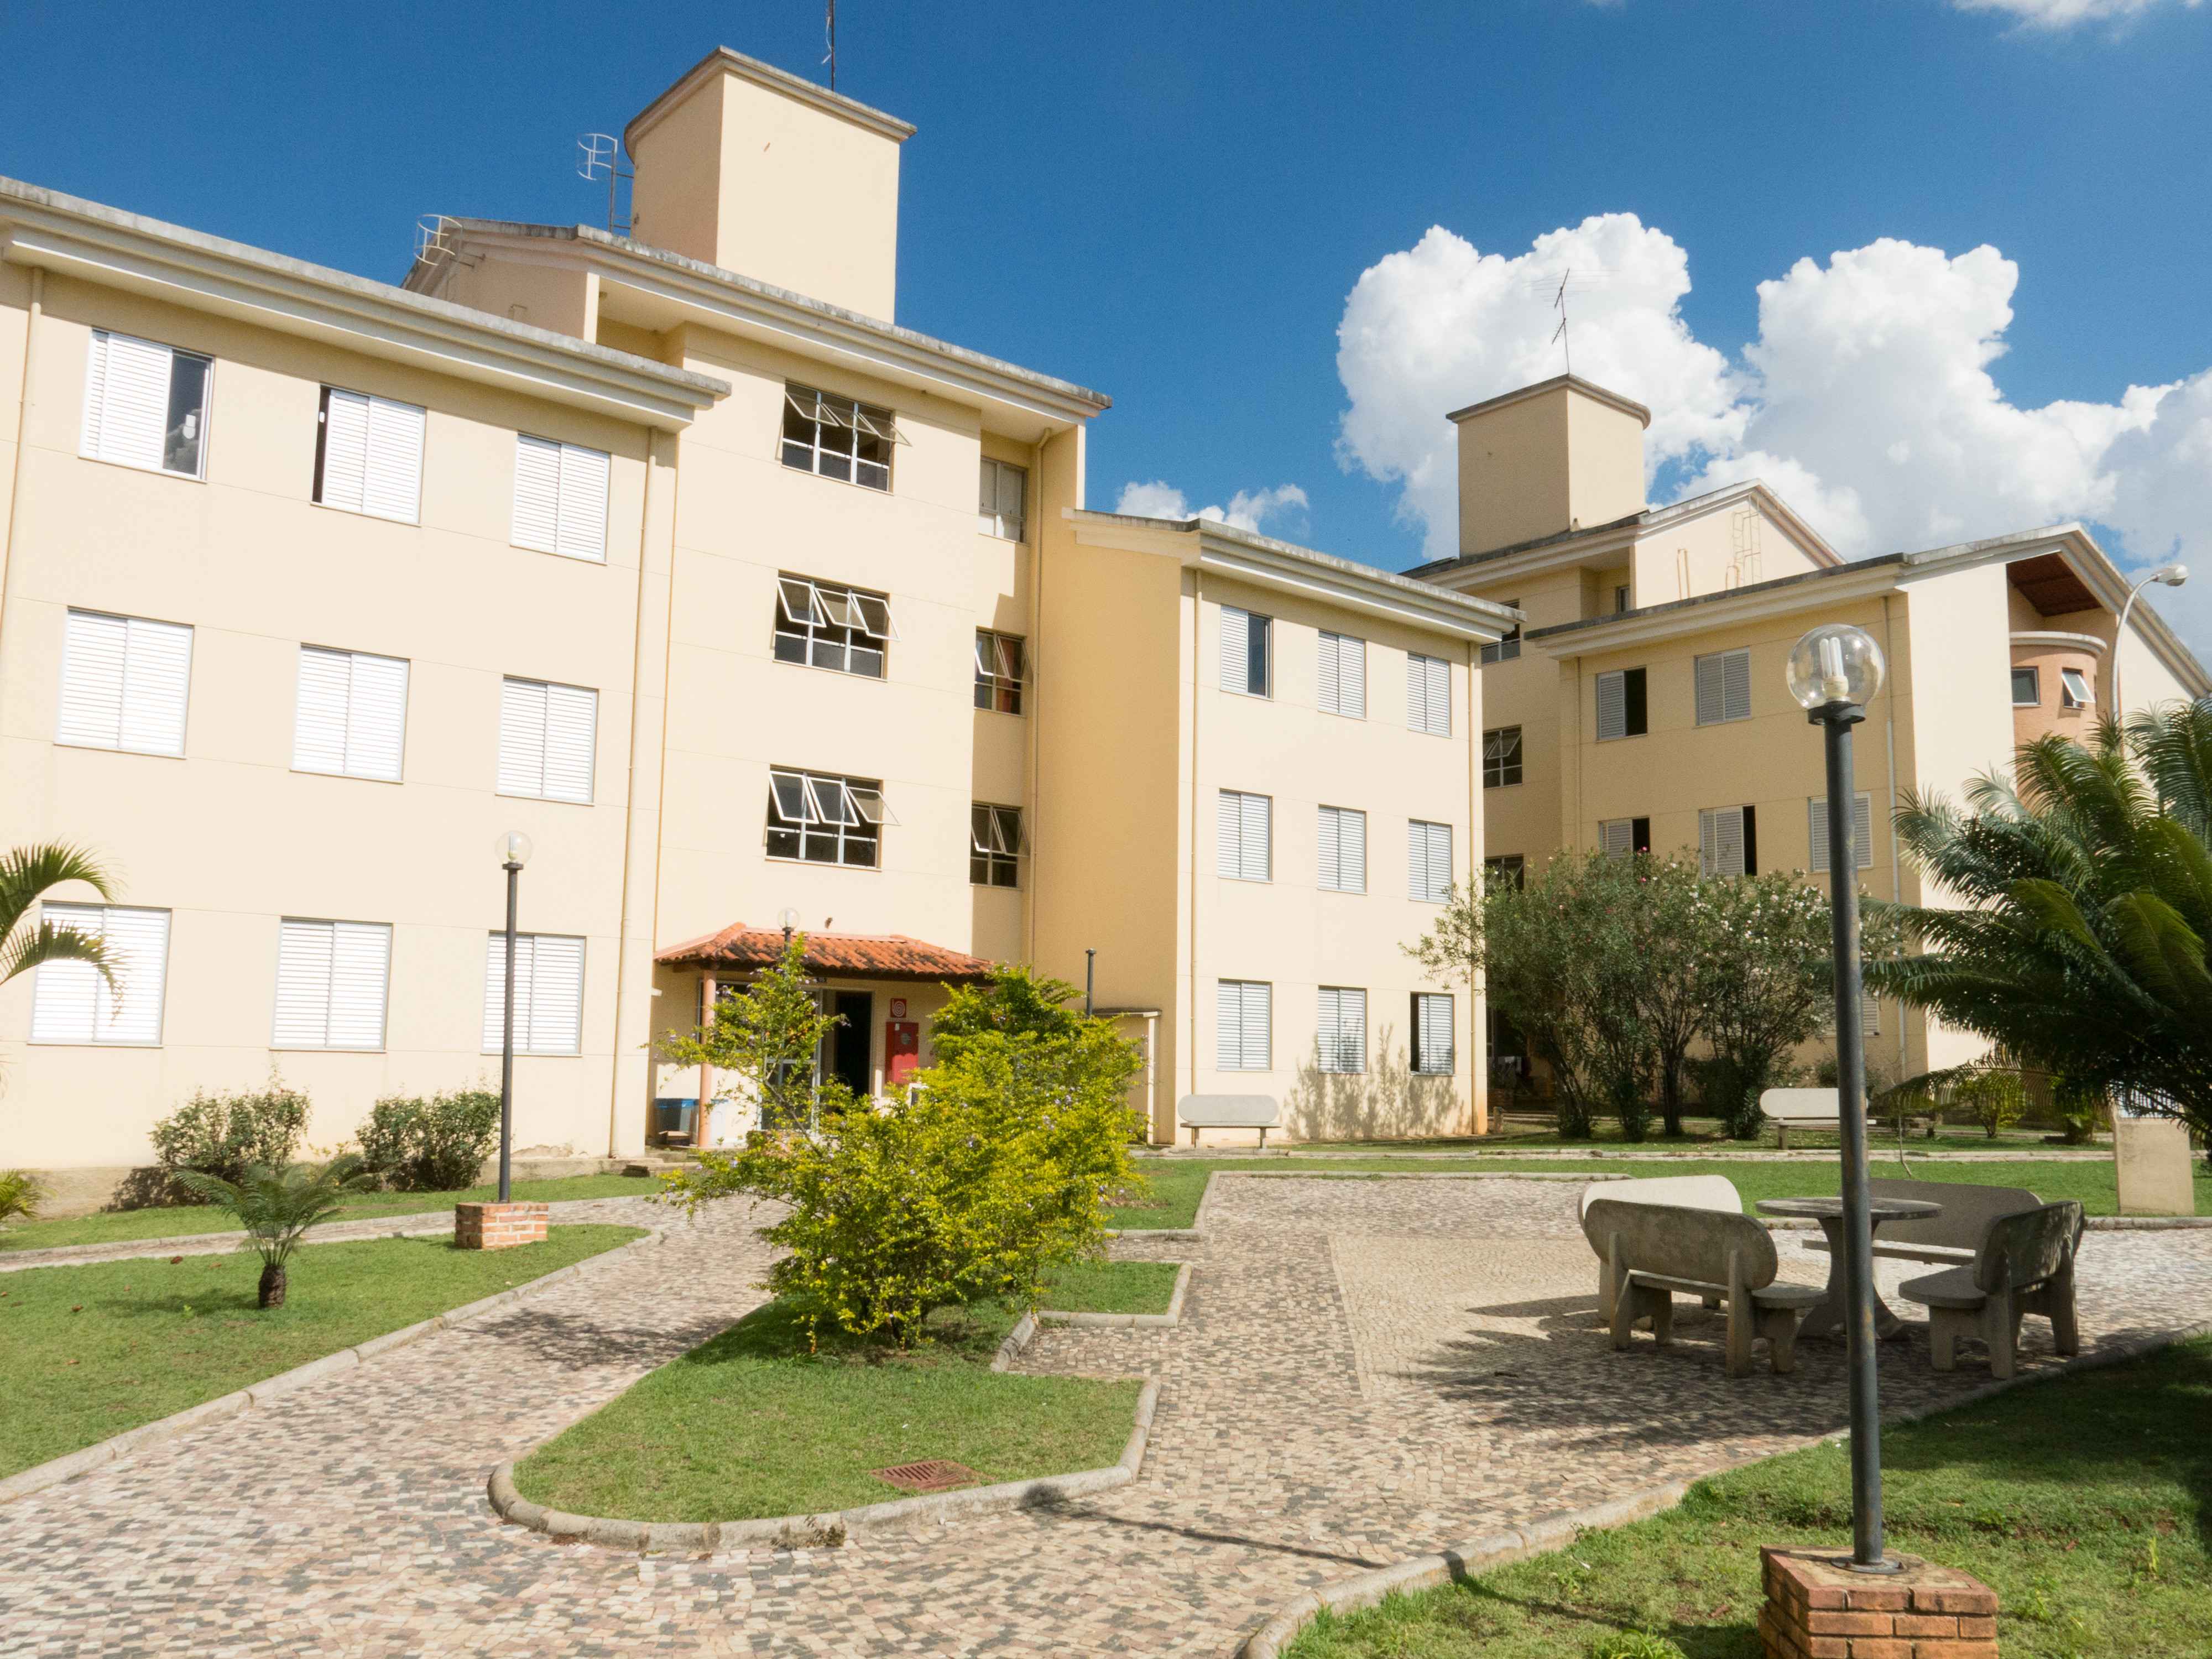 Área comum da Moradia Universitária, no bairro Ouro Preto: programa será avaliado a partir do próximo mês